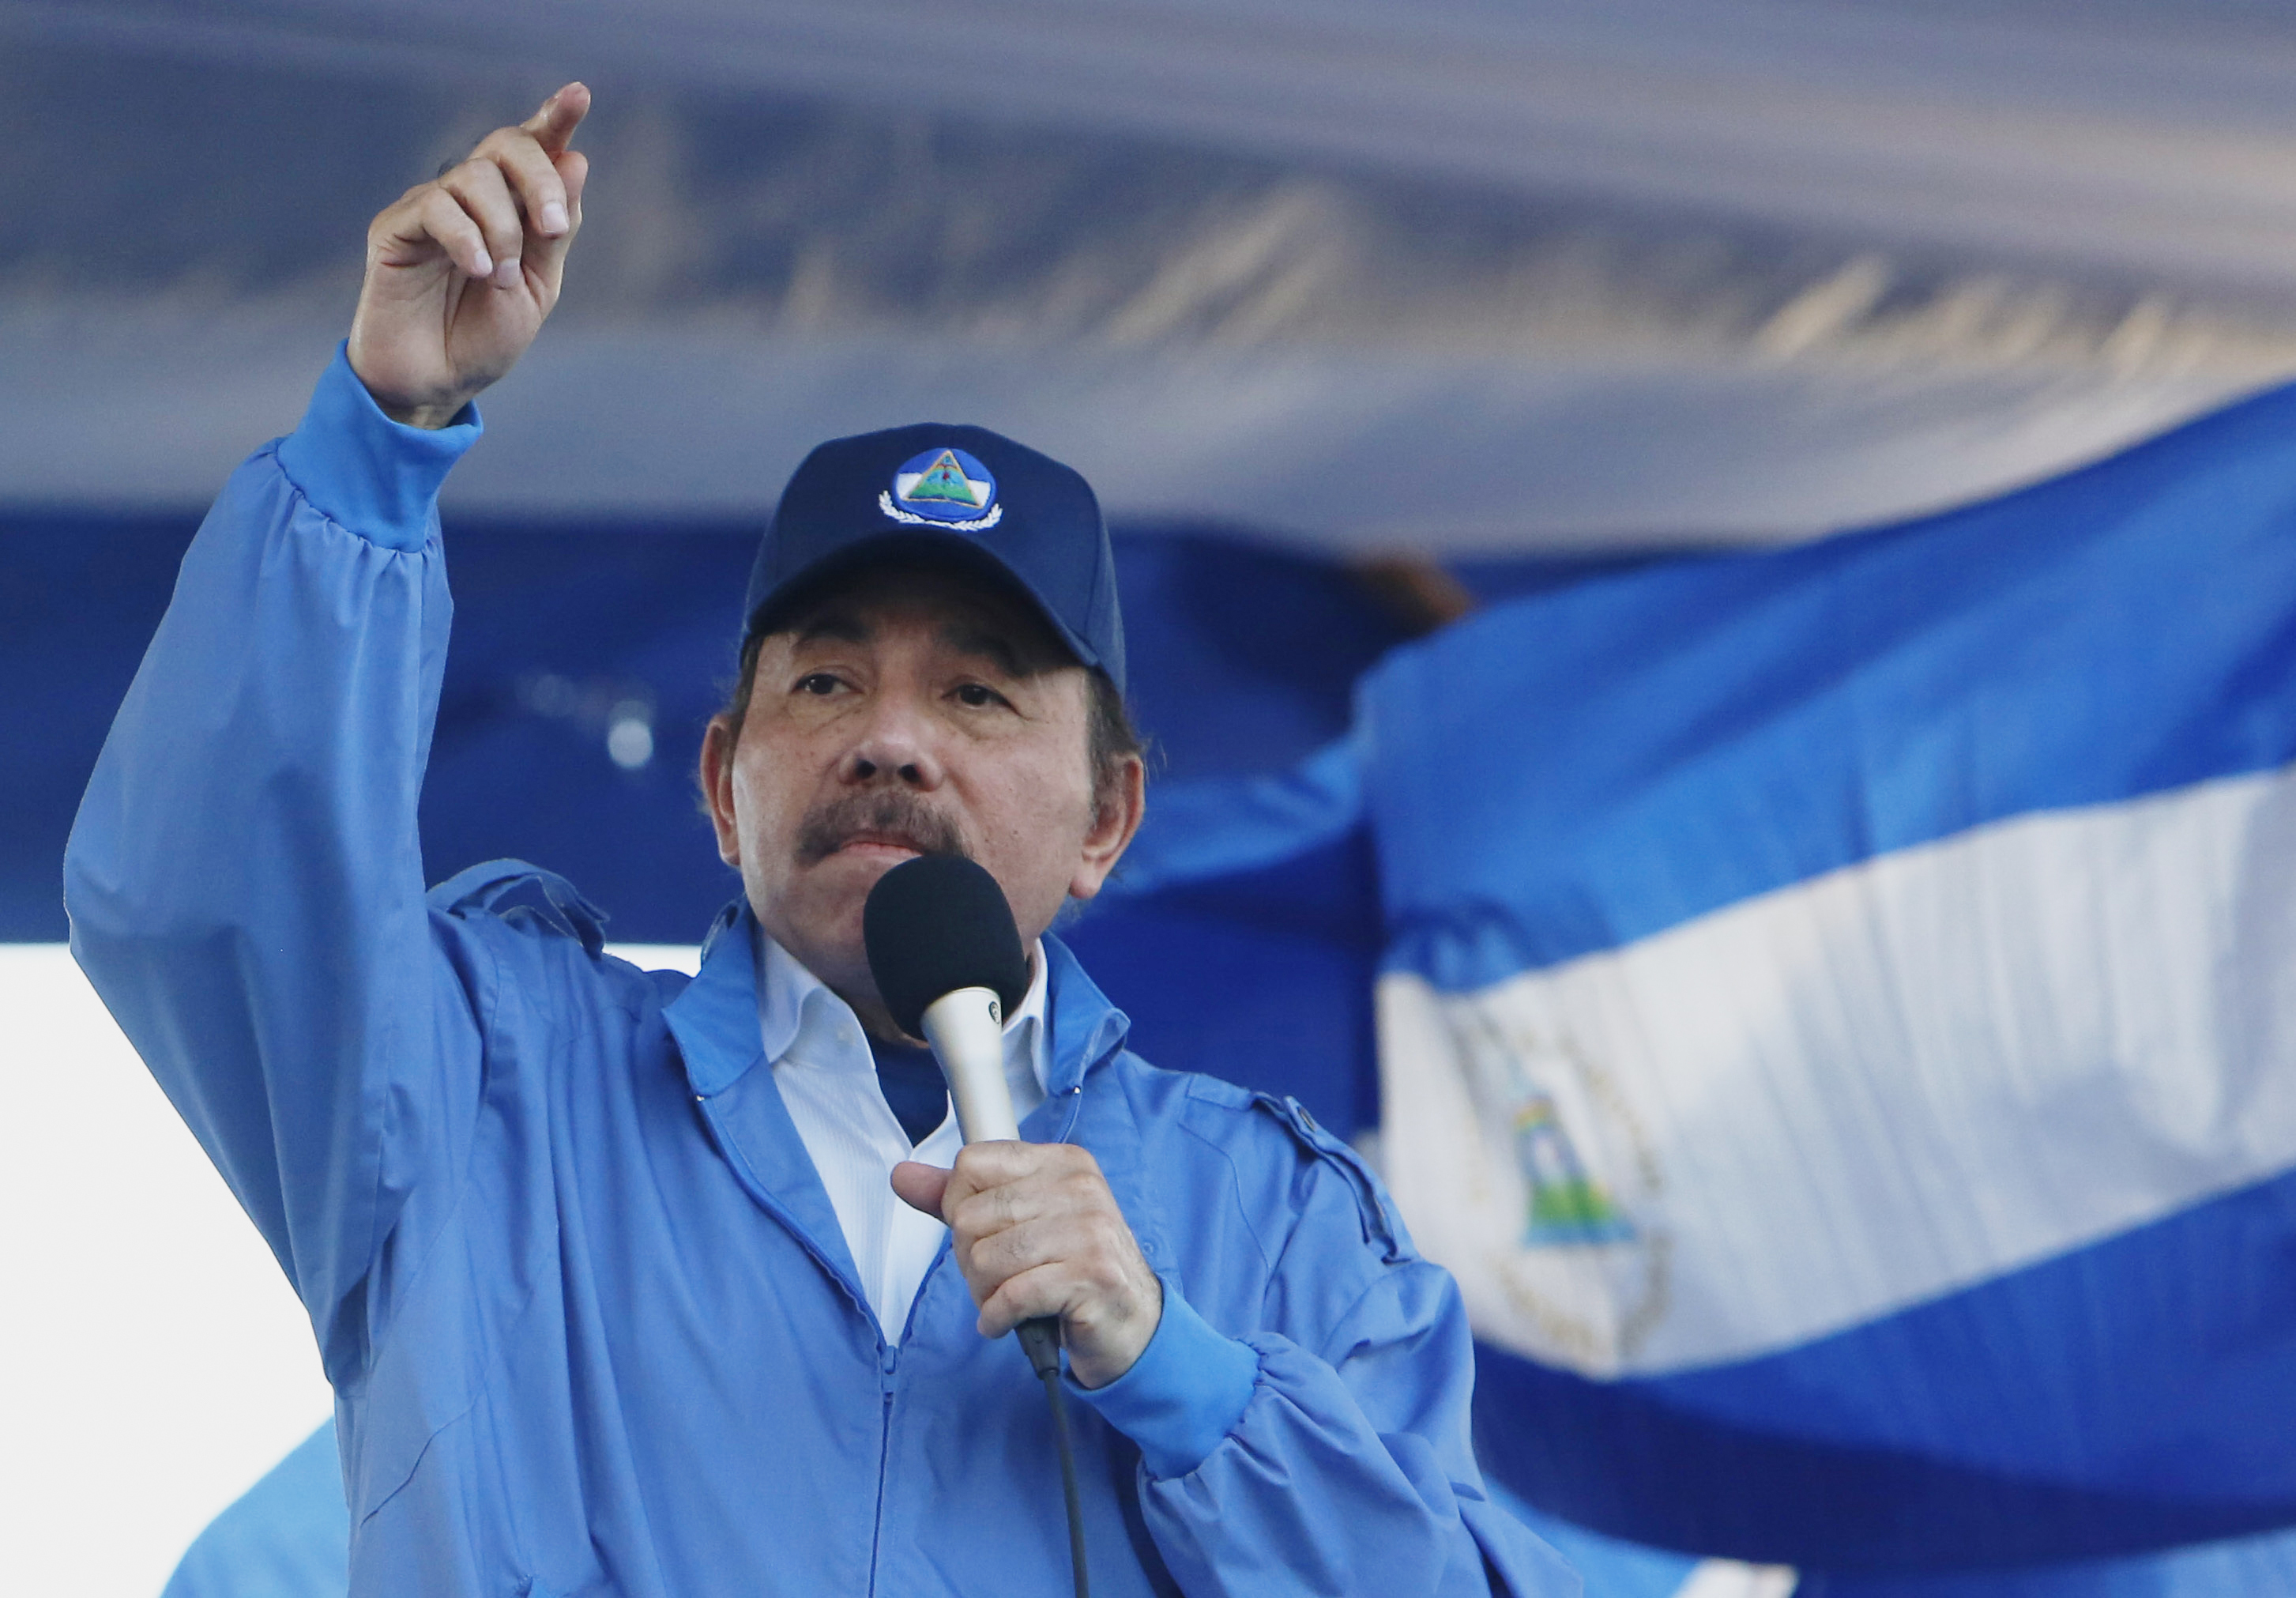 The president of Nicaragua, Daniel Ortega, in 2018.